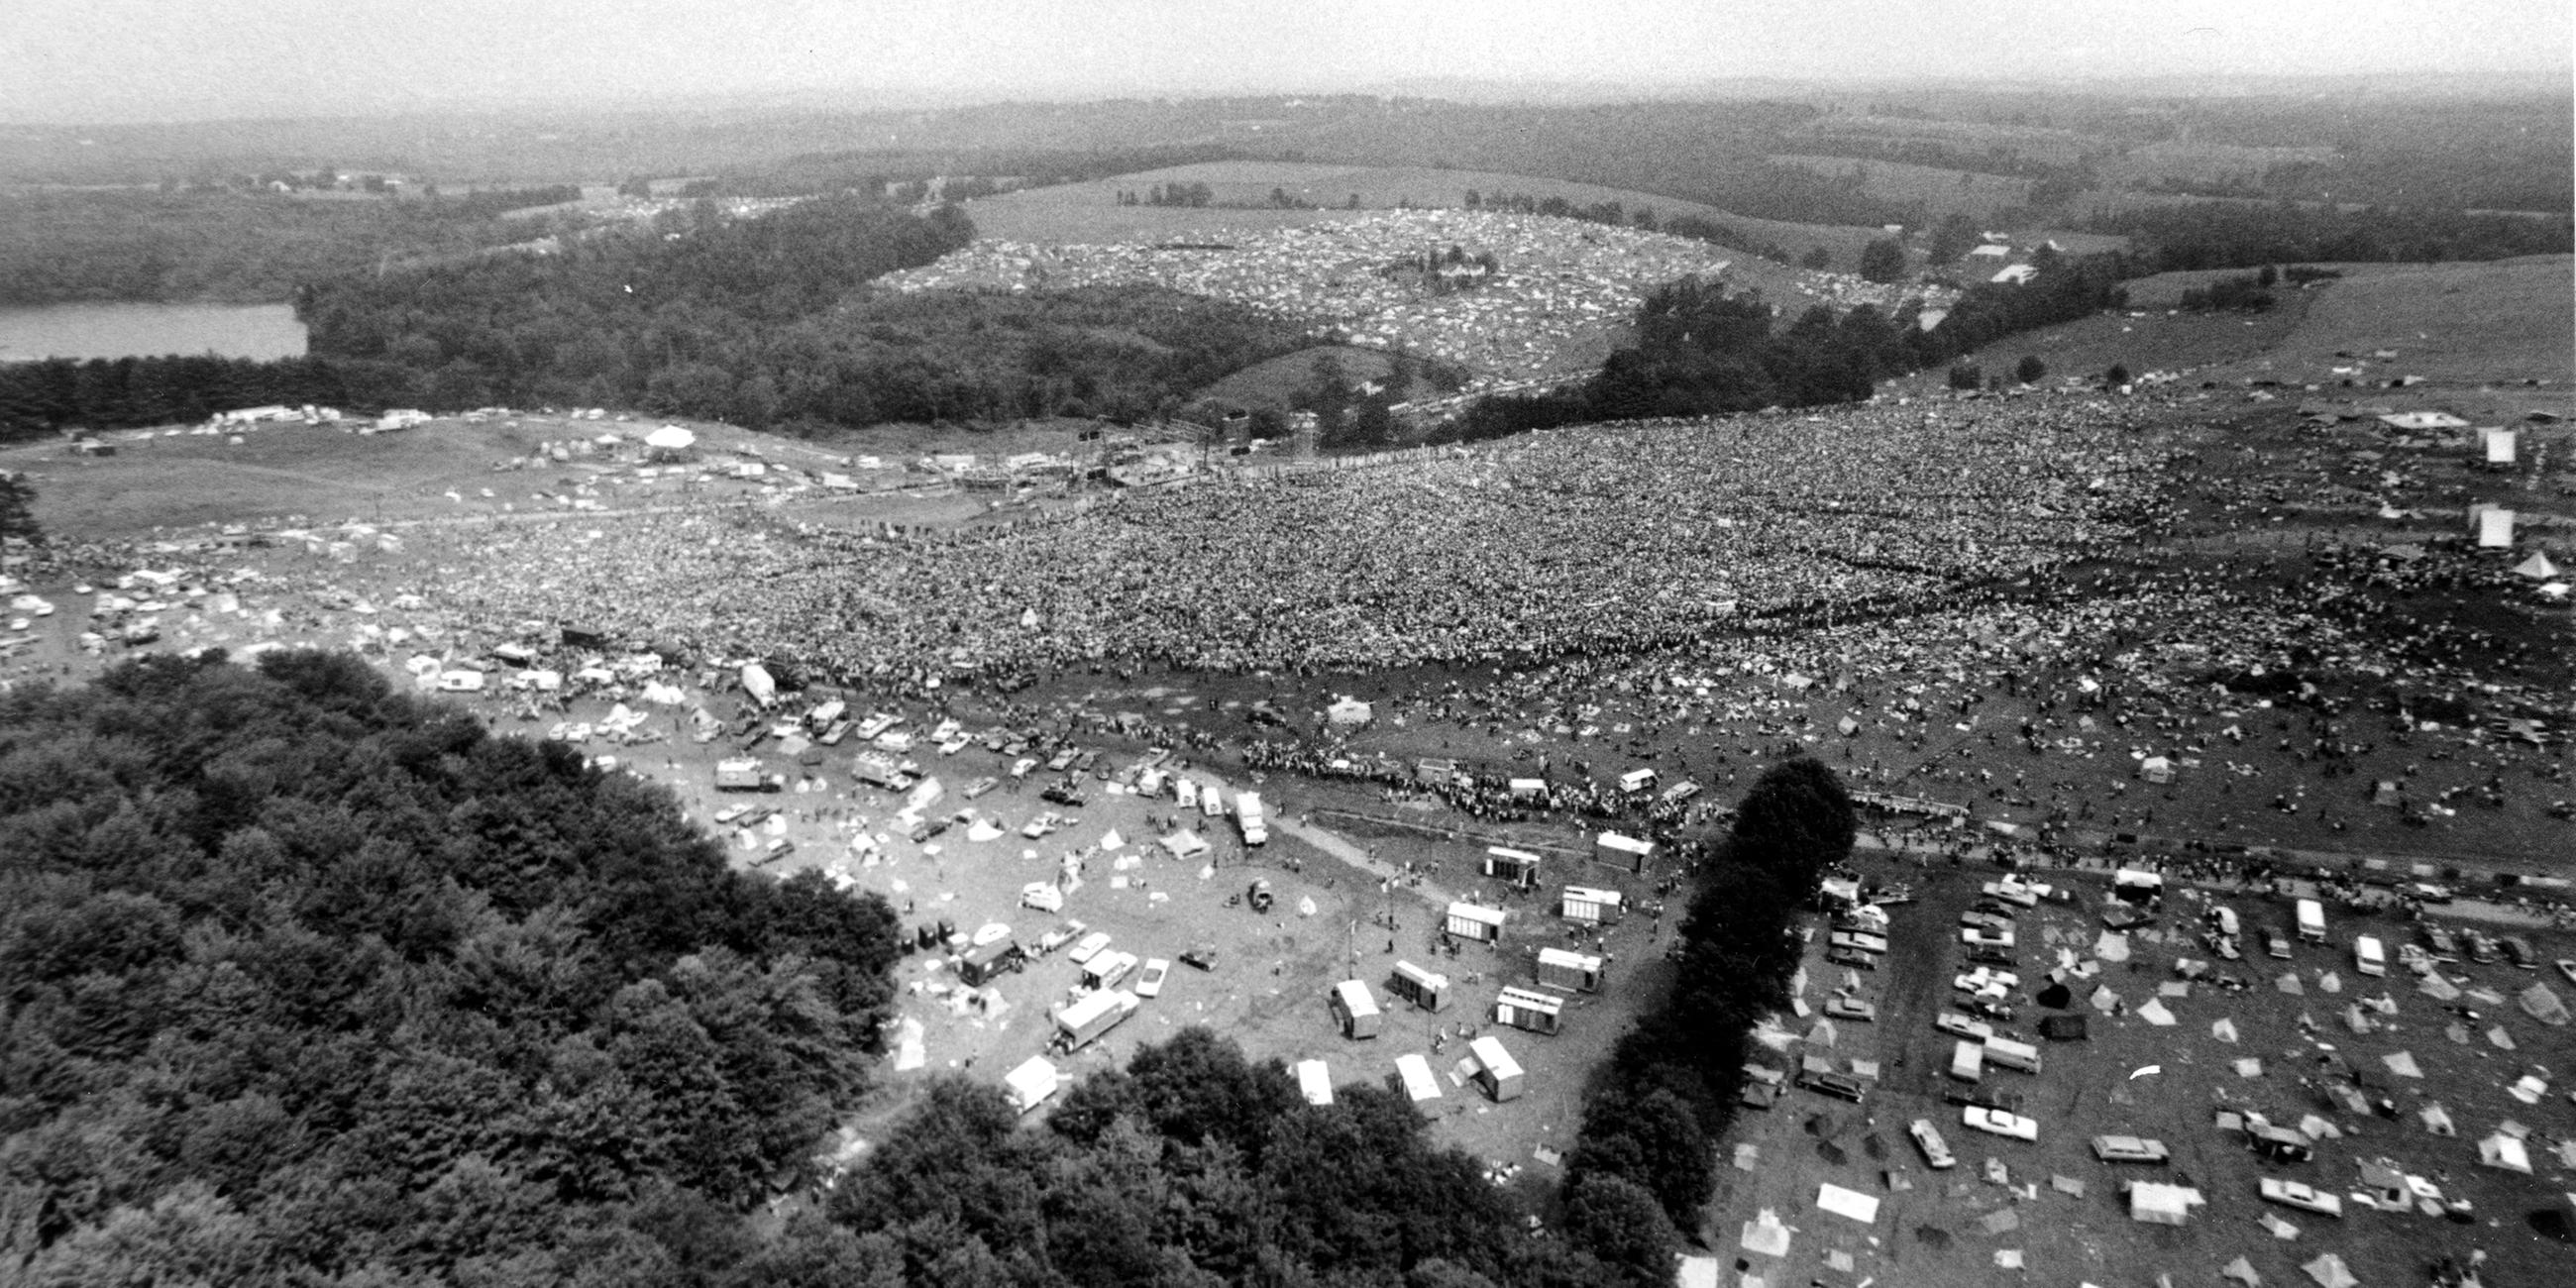 Luftaufnahme vom Woodstock-Festivalgelände 1969 